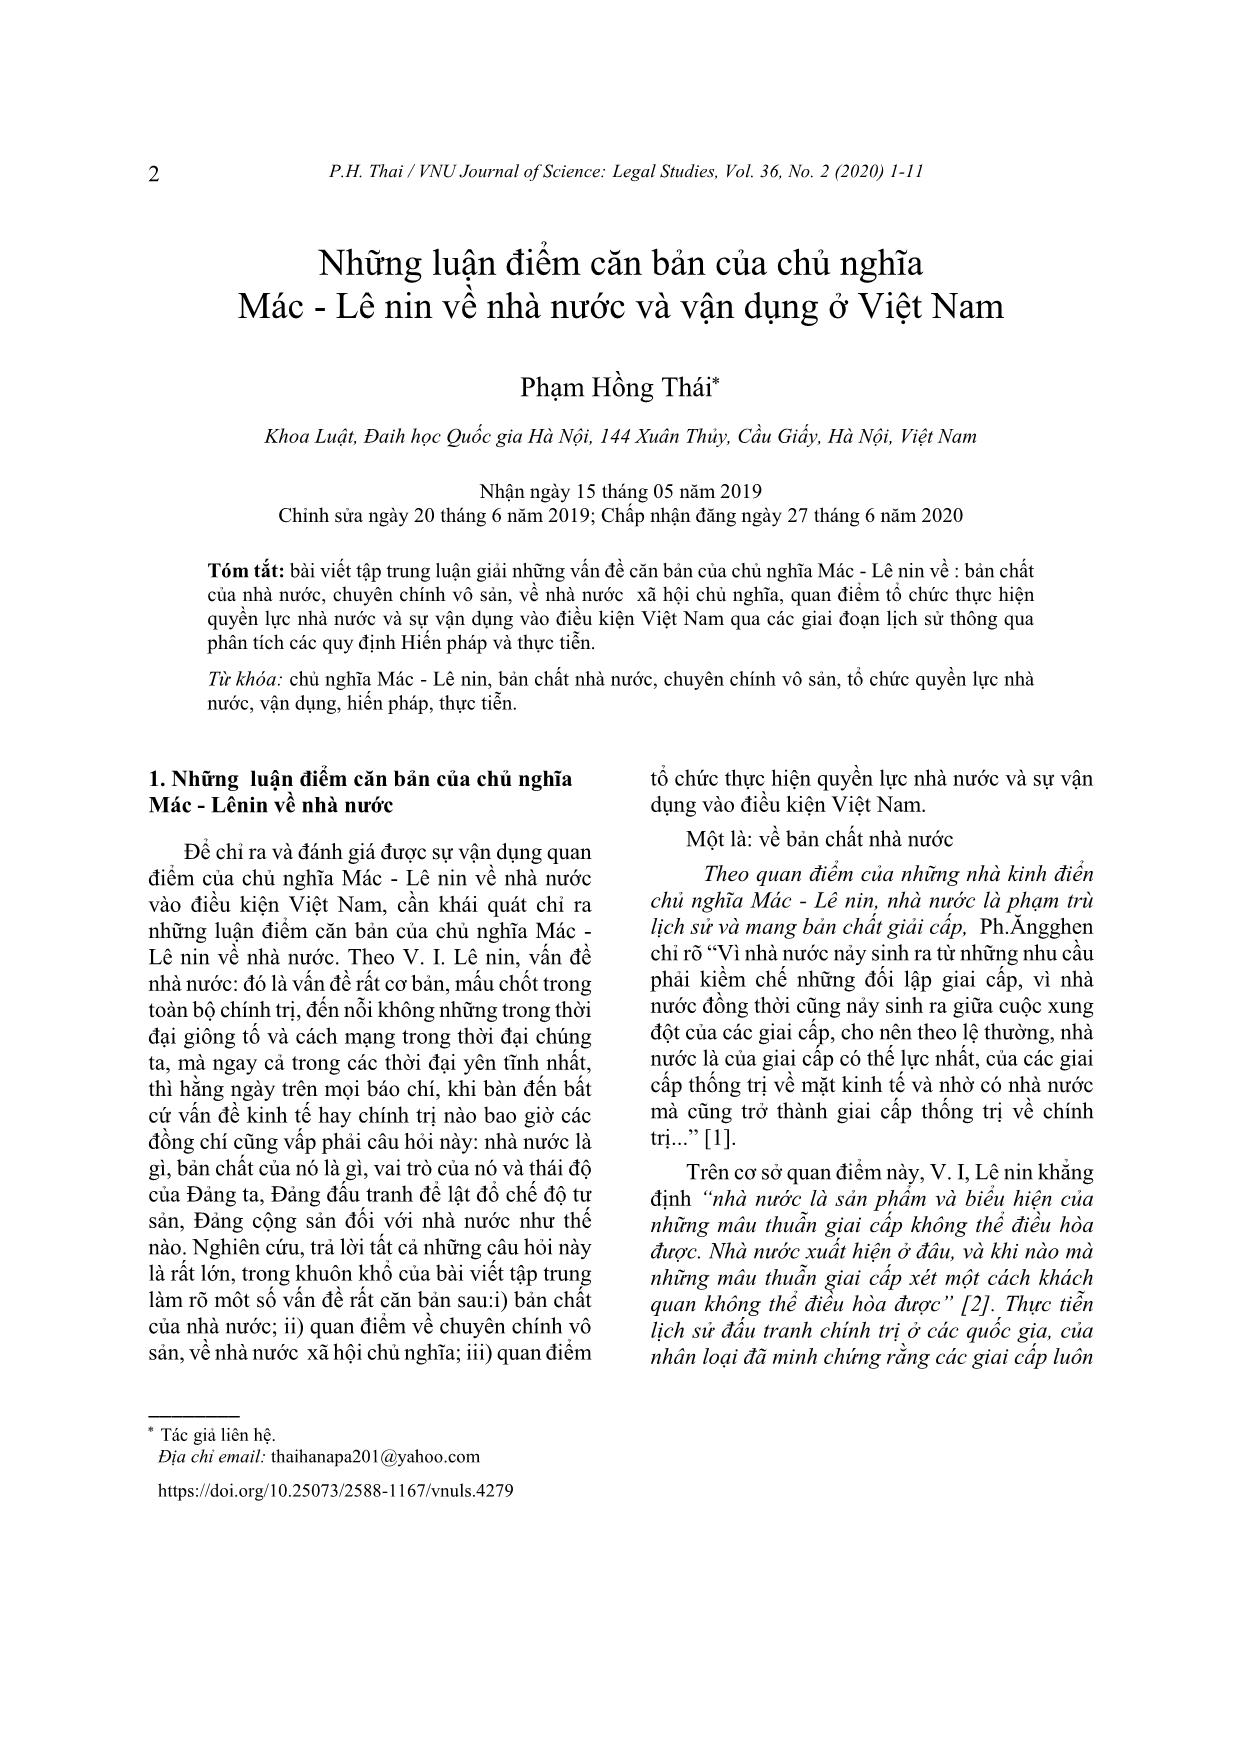 Những luận điểm căn bản của chủ nghĩa Mác-Lênin về nhà nước và vận dụng ở Việt Nam trang 2